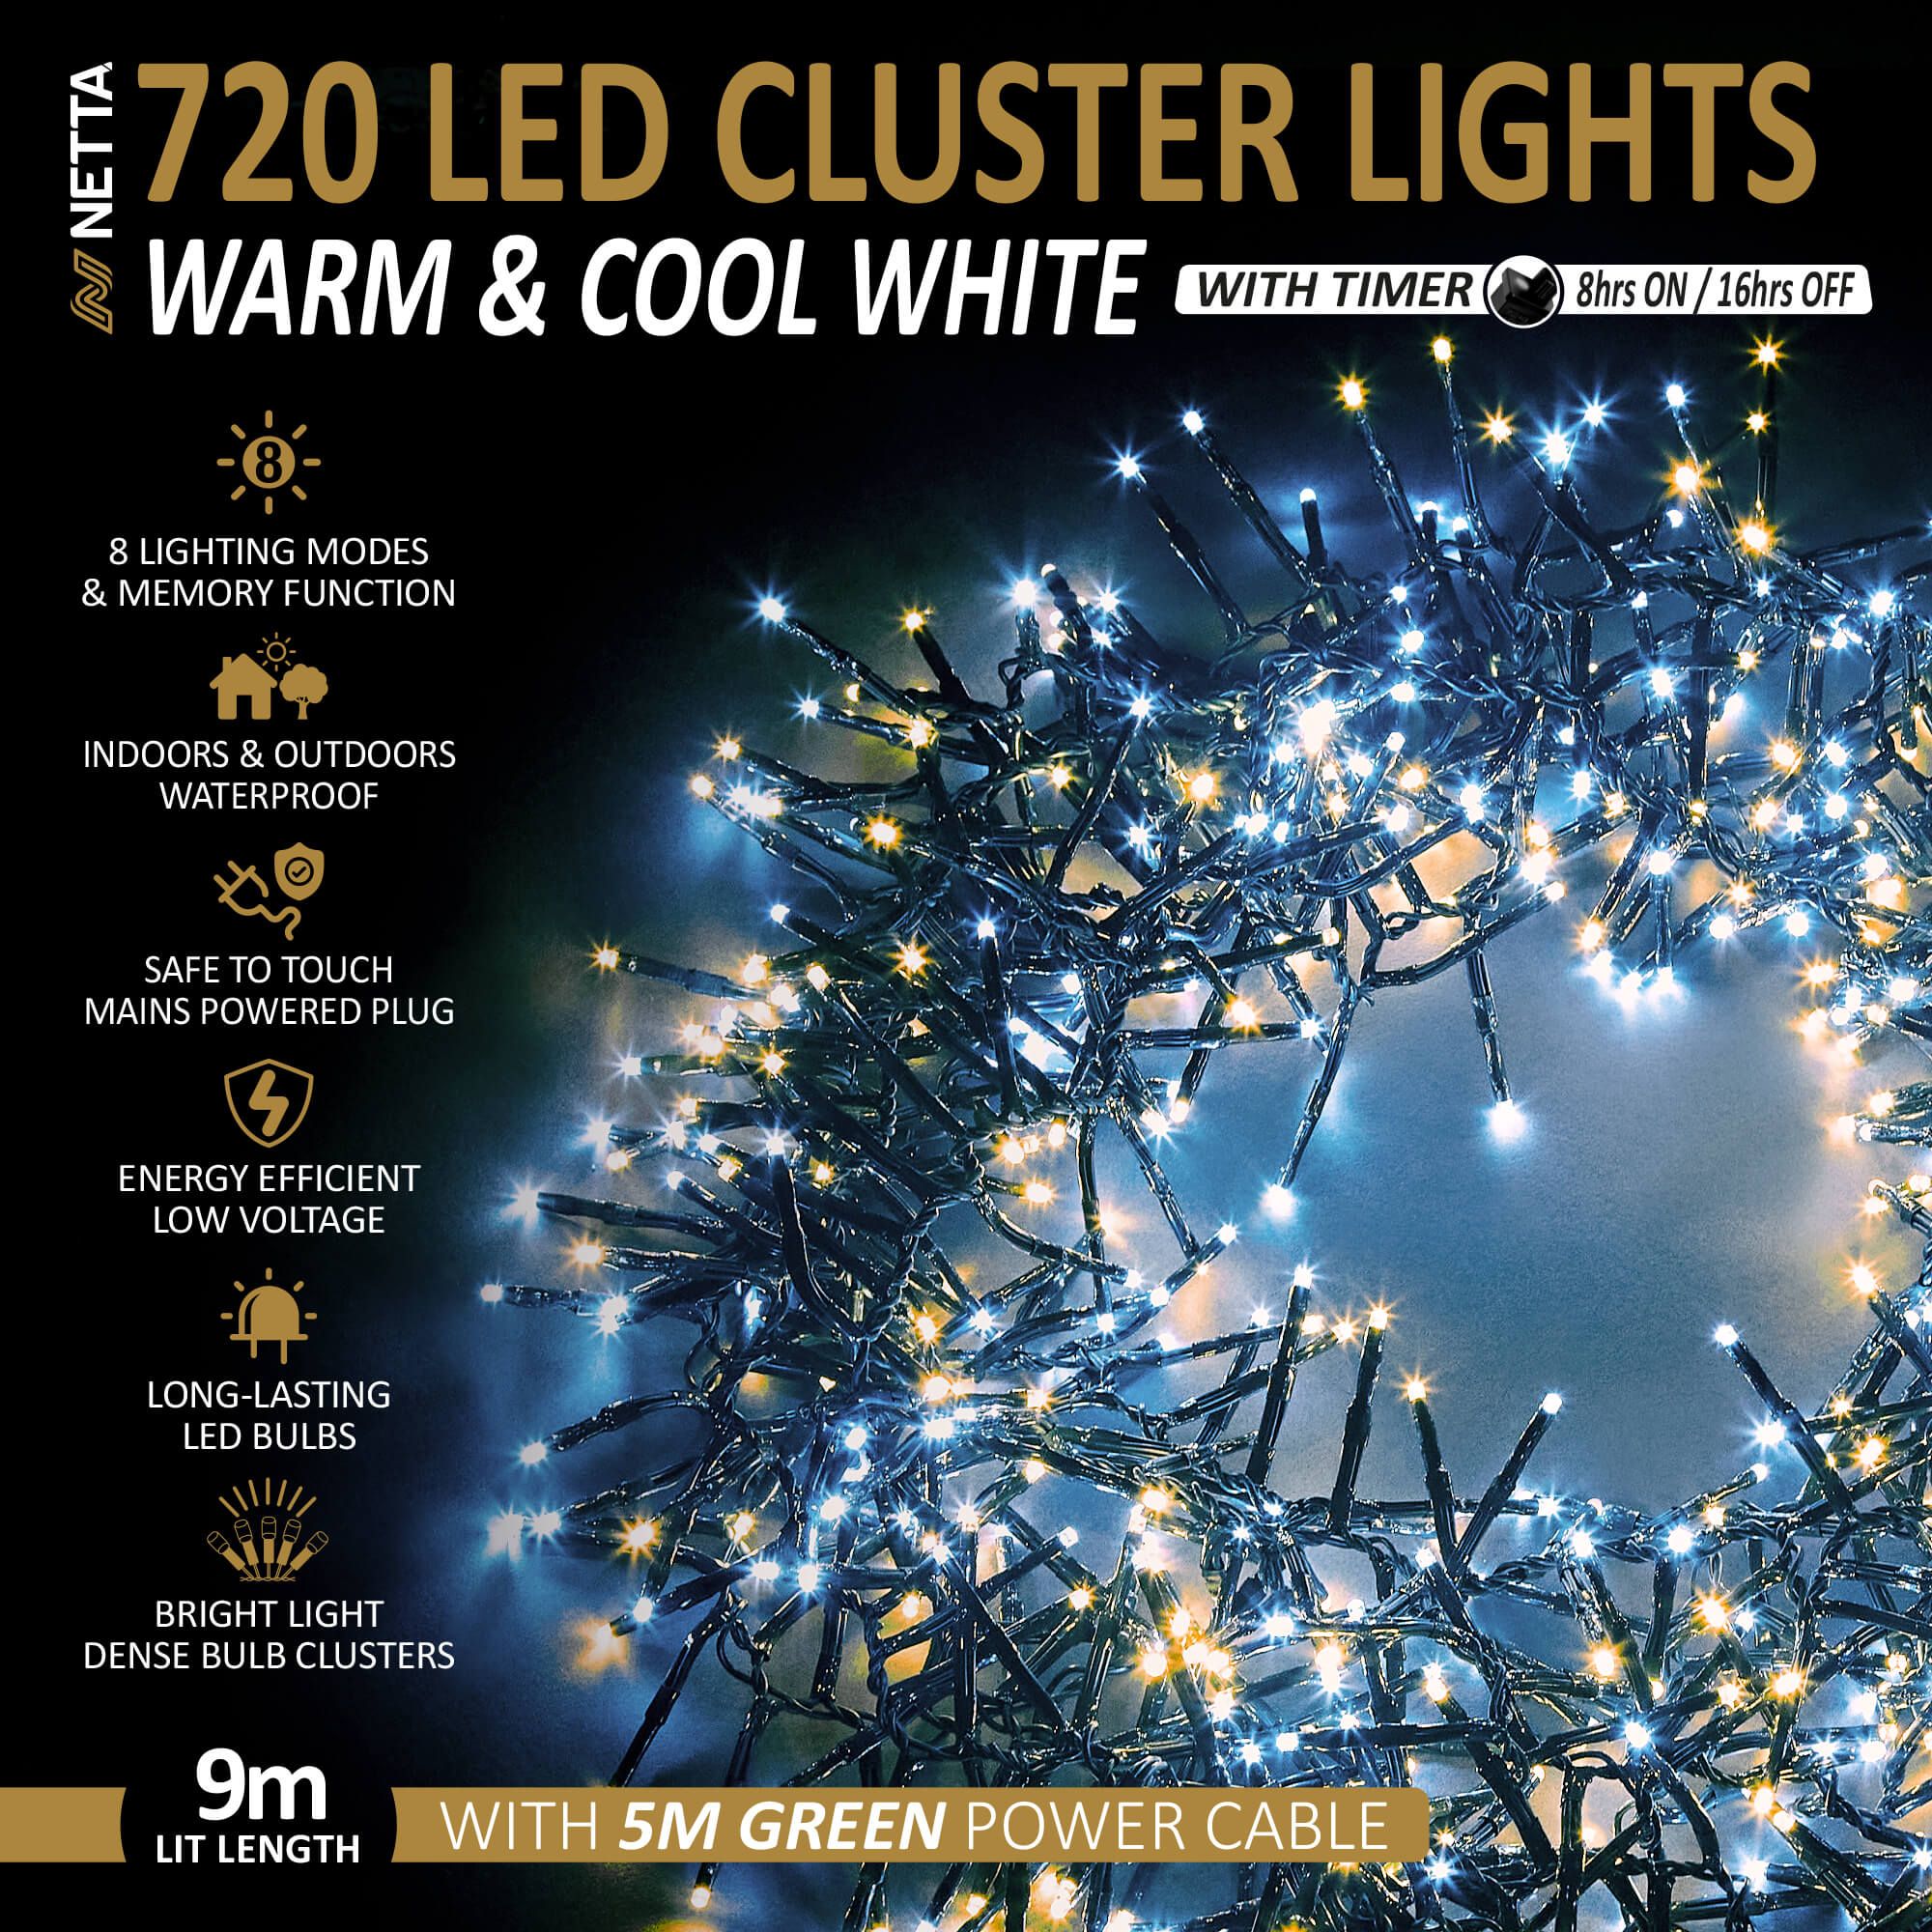 NETTA 720LED Cluster String Lights - Warm & Cool White